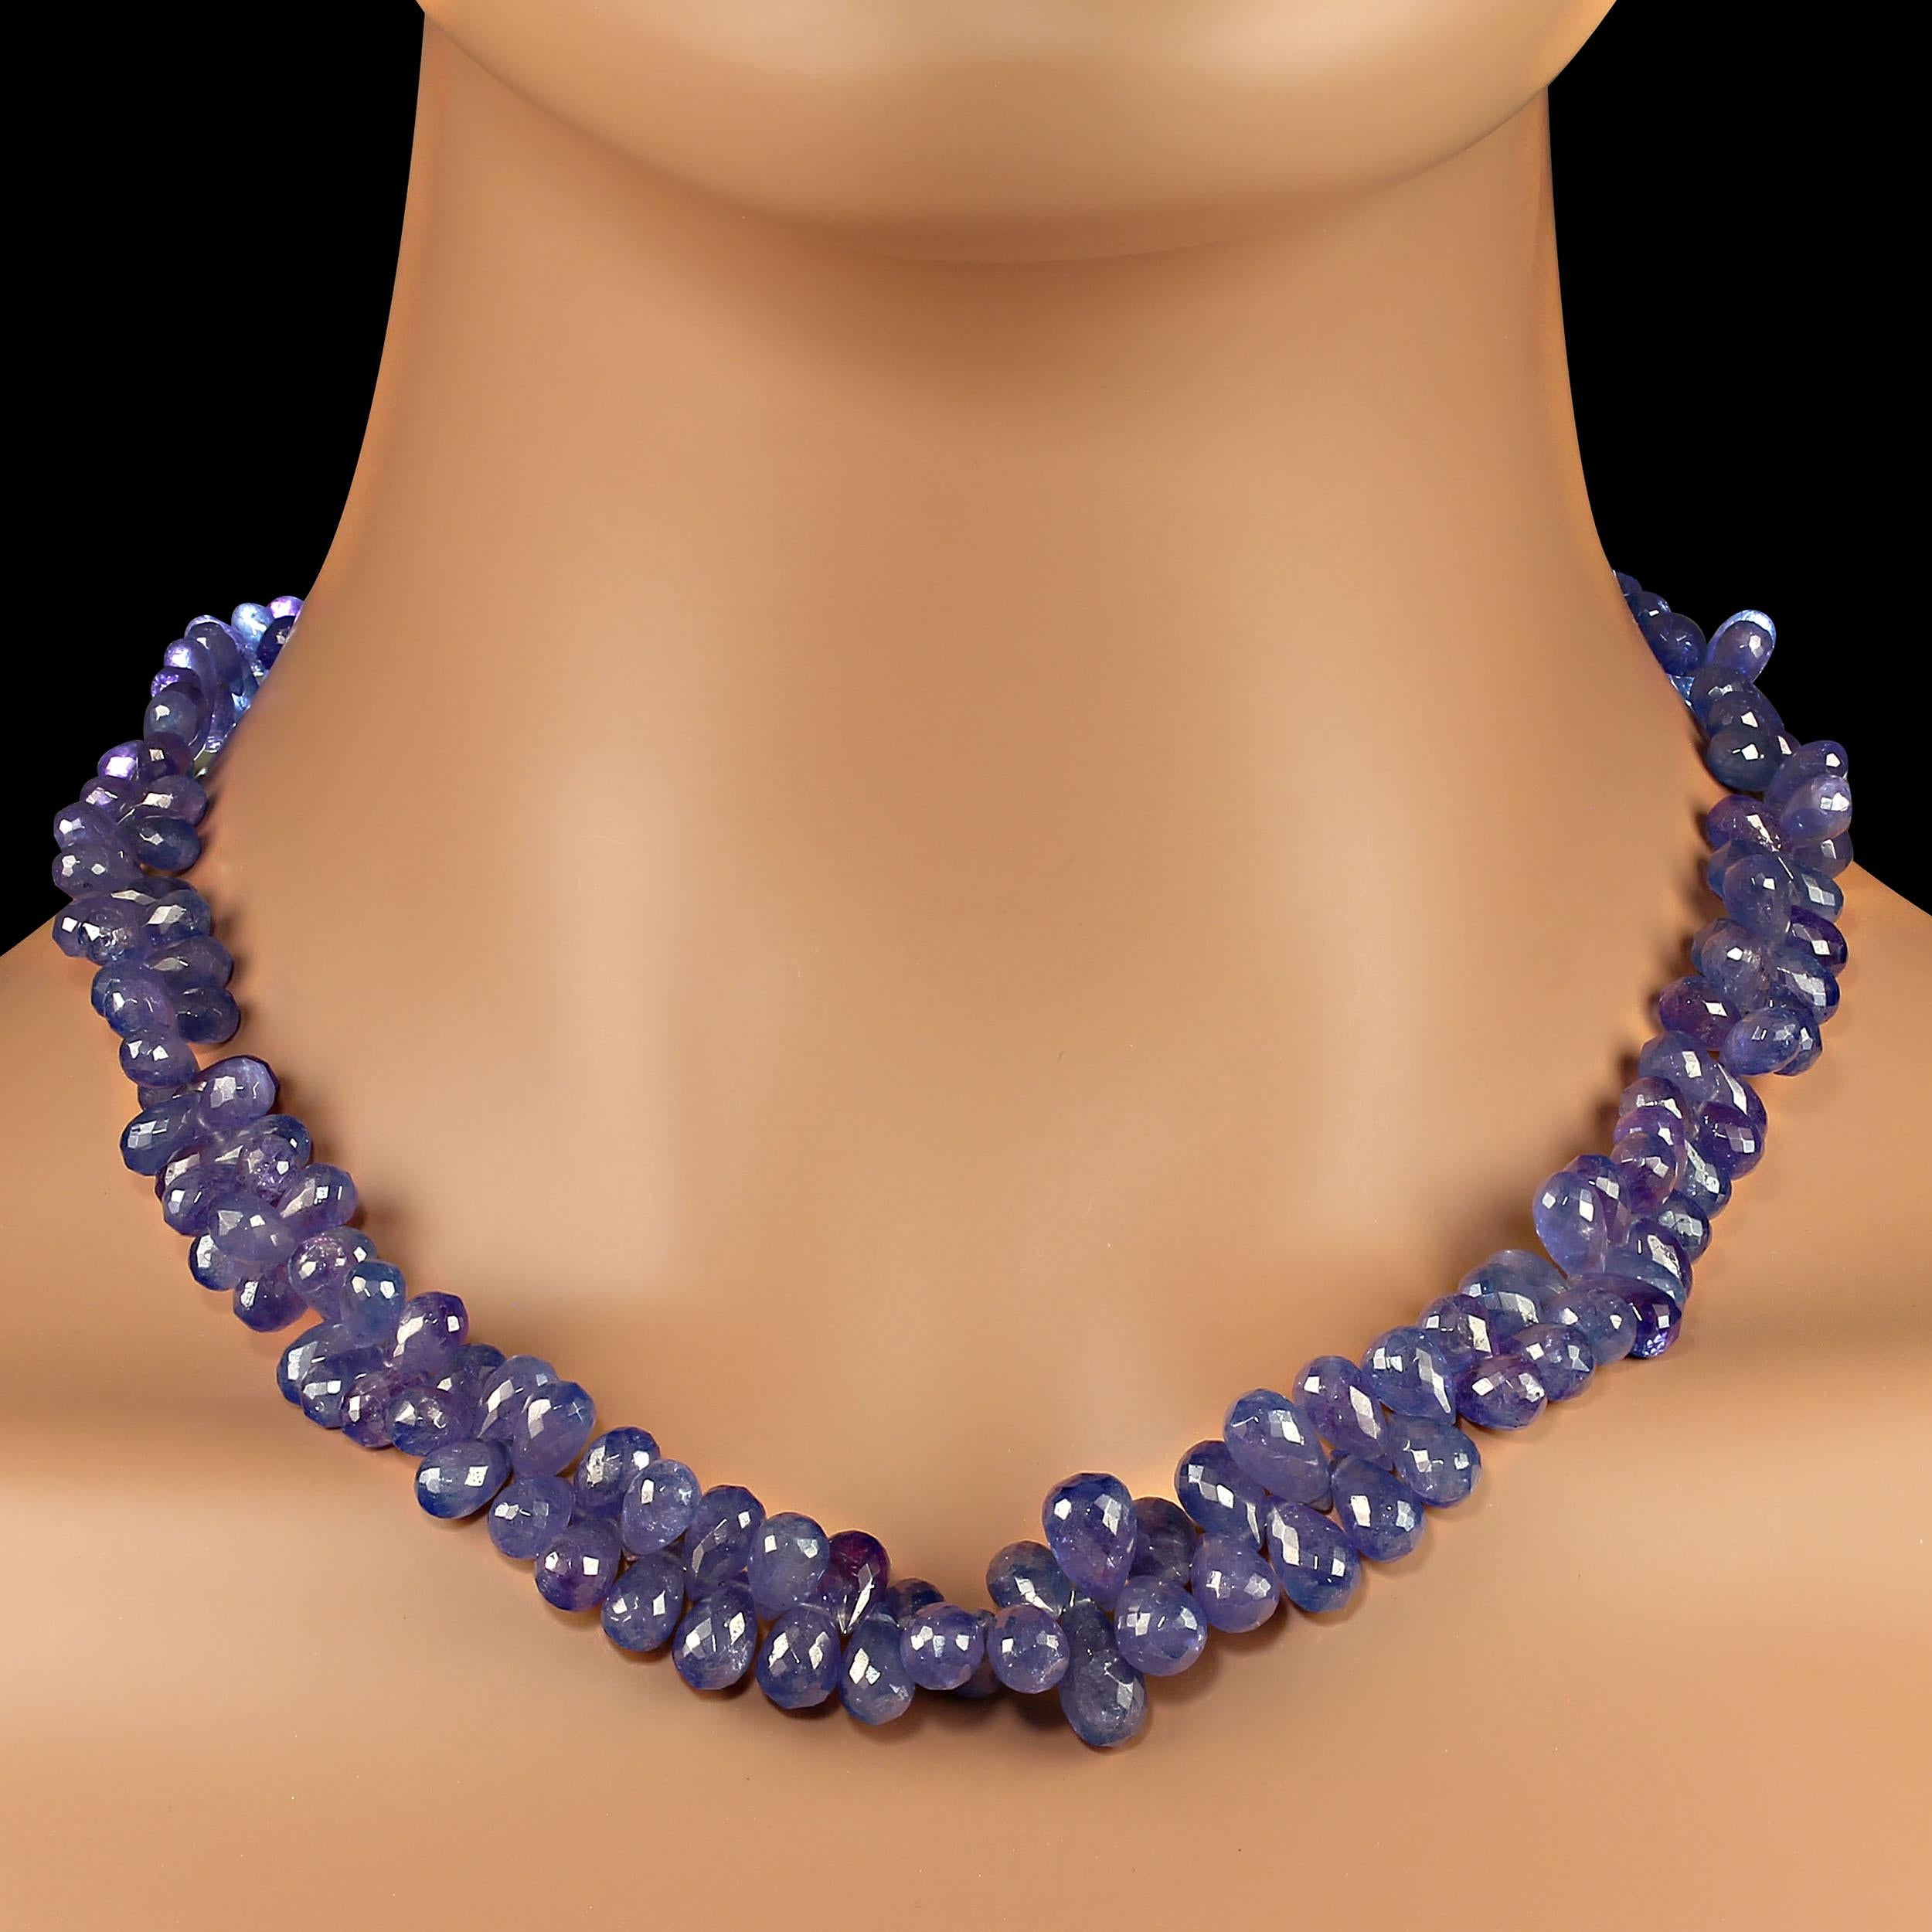 19 Zoll wunderschöne Tansanit-Halskette in blau-violetten facettierten Brioletten.  Diese Halskette graduiert, 6-12mm in die funkelnden Brioletten, die im Licht tanzen.  Es schmiegt sich an Ihr Dekolleté und betont alle Hauttöne.  Tragen Sie dieses